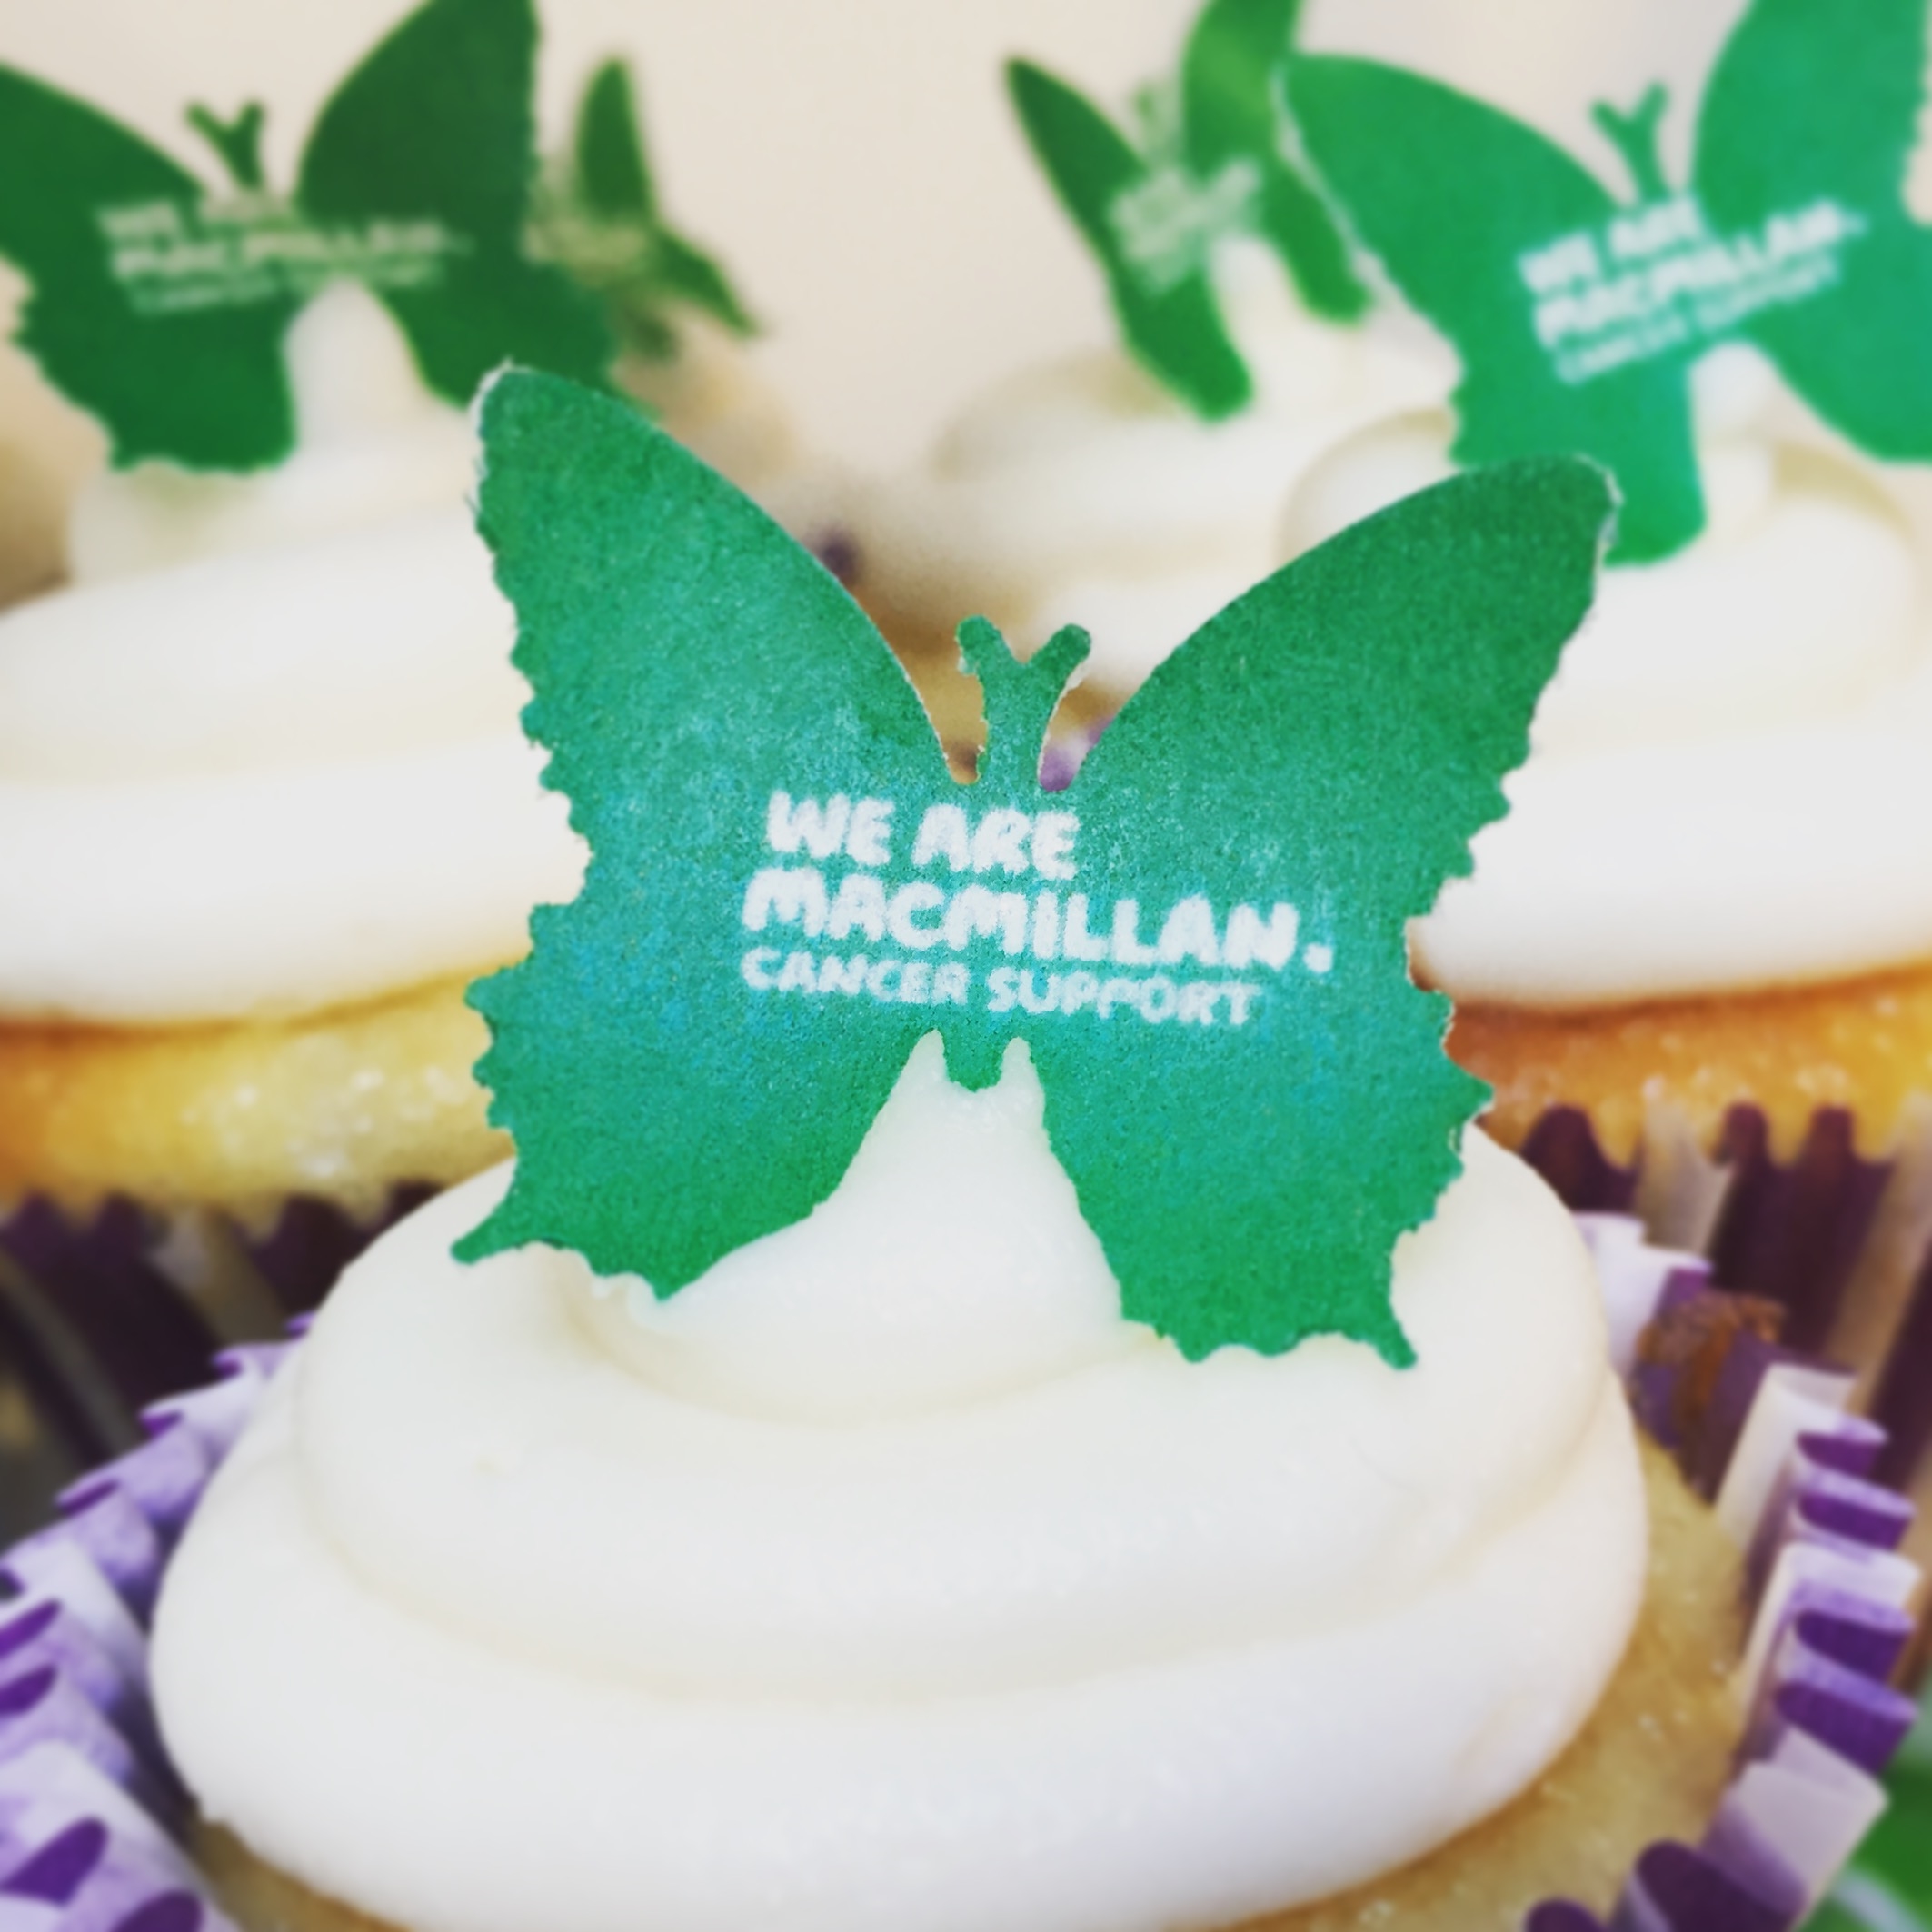 ESco eats cake for Macmillan Cancer Support